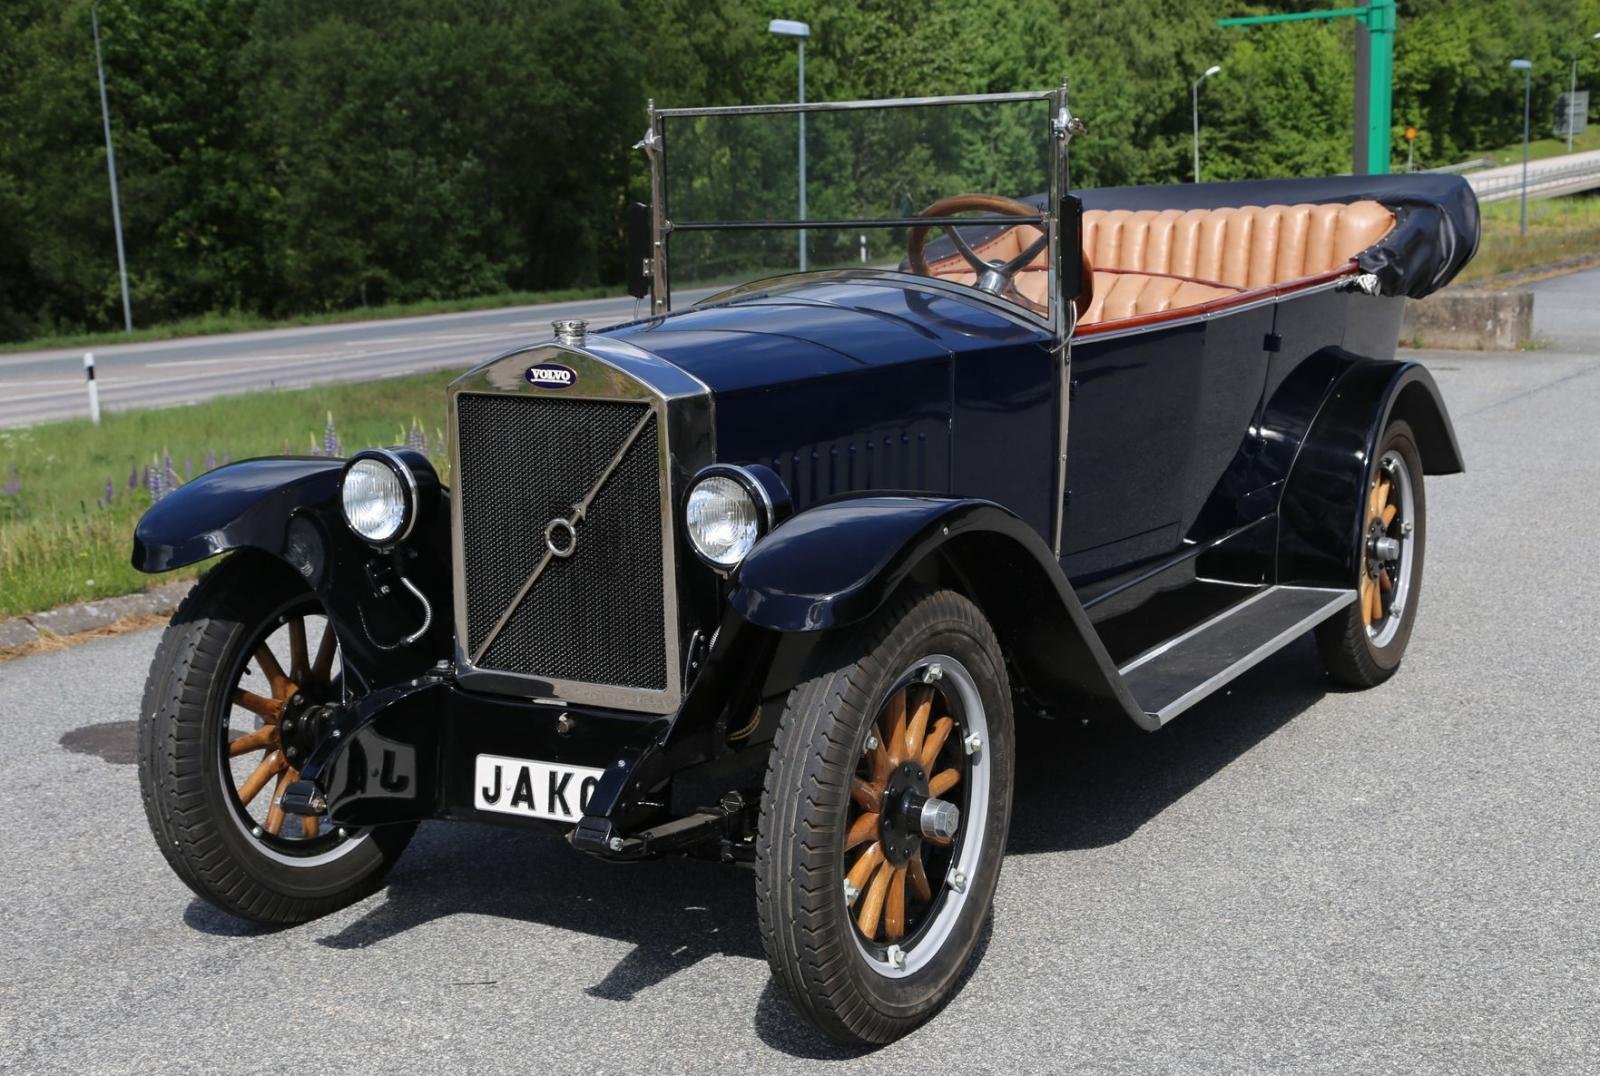 Volvo ÖV 4 - chiếc xe đầu tiên của Volvo - rời nhà máy vào ngày 14 tháng 4 năm 1927. Chiếc xe có biệt danh “Jakob” này sử dụng động cơ 2 lít 4 xi-lanh.